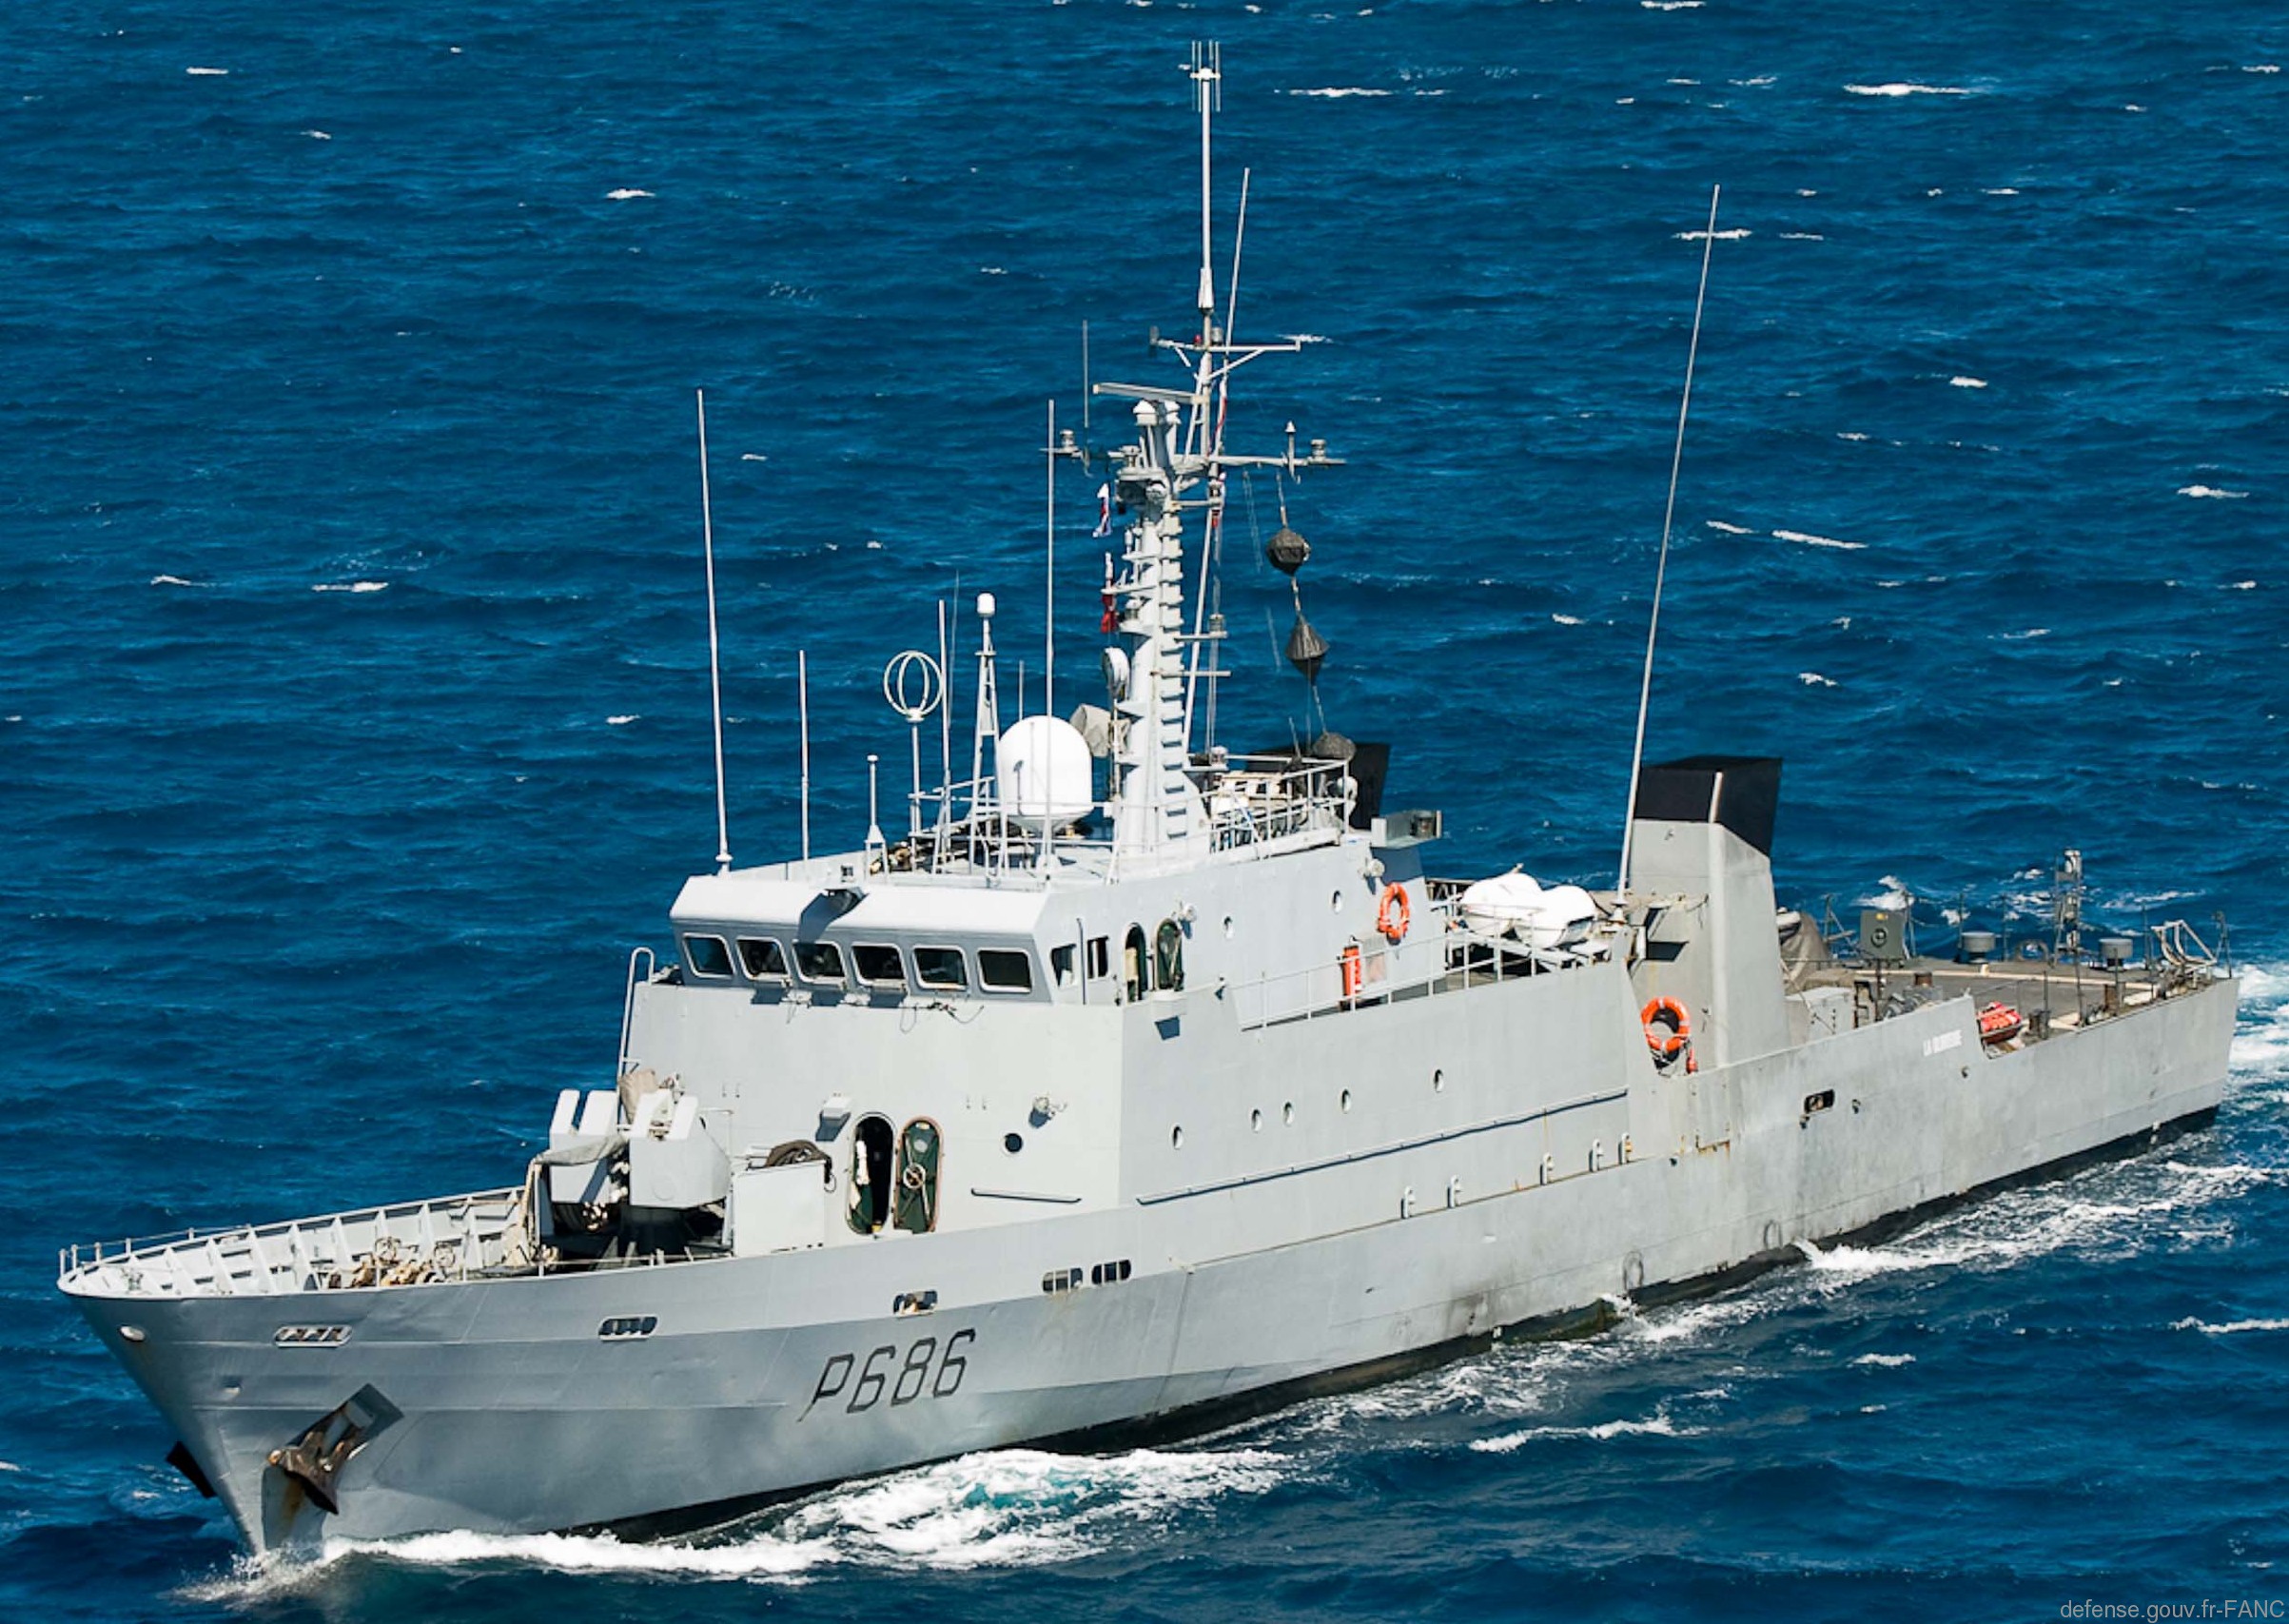 p-686 la glorieuse l'audacieuse p400 class patrol vessel french navy patrouilleur marine nationale 02